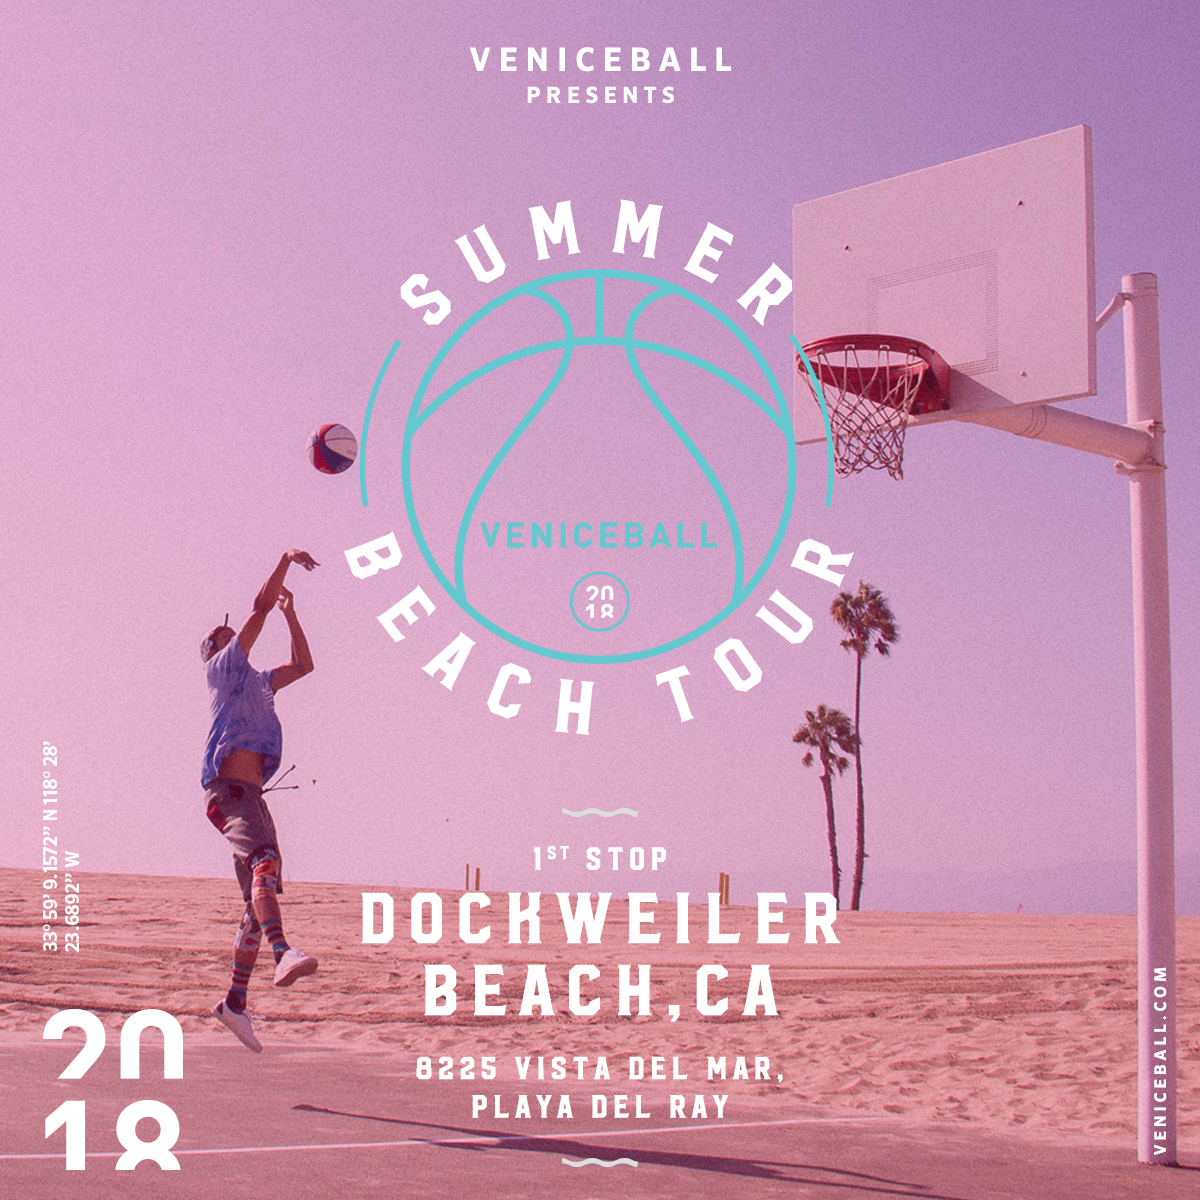 Veniceball Beach summer tour kicks off @ Dockweilwer Beach 6/14